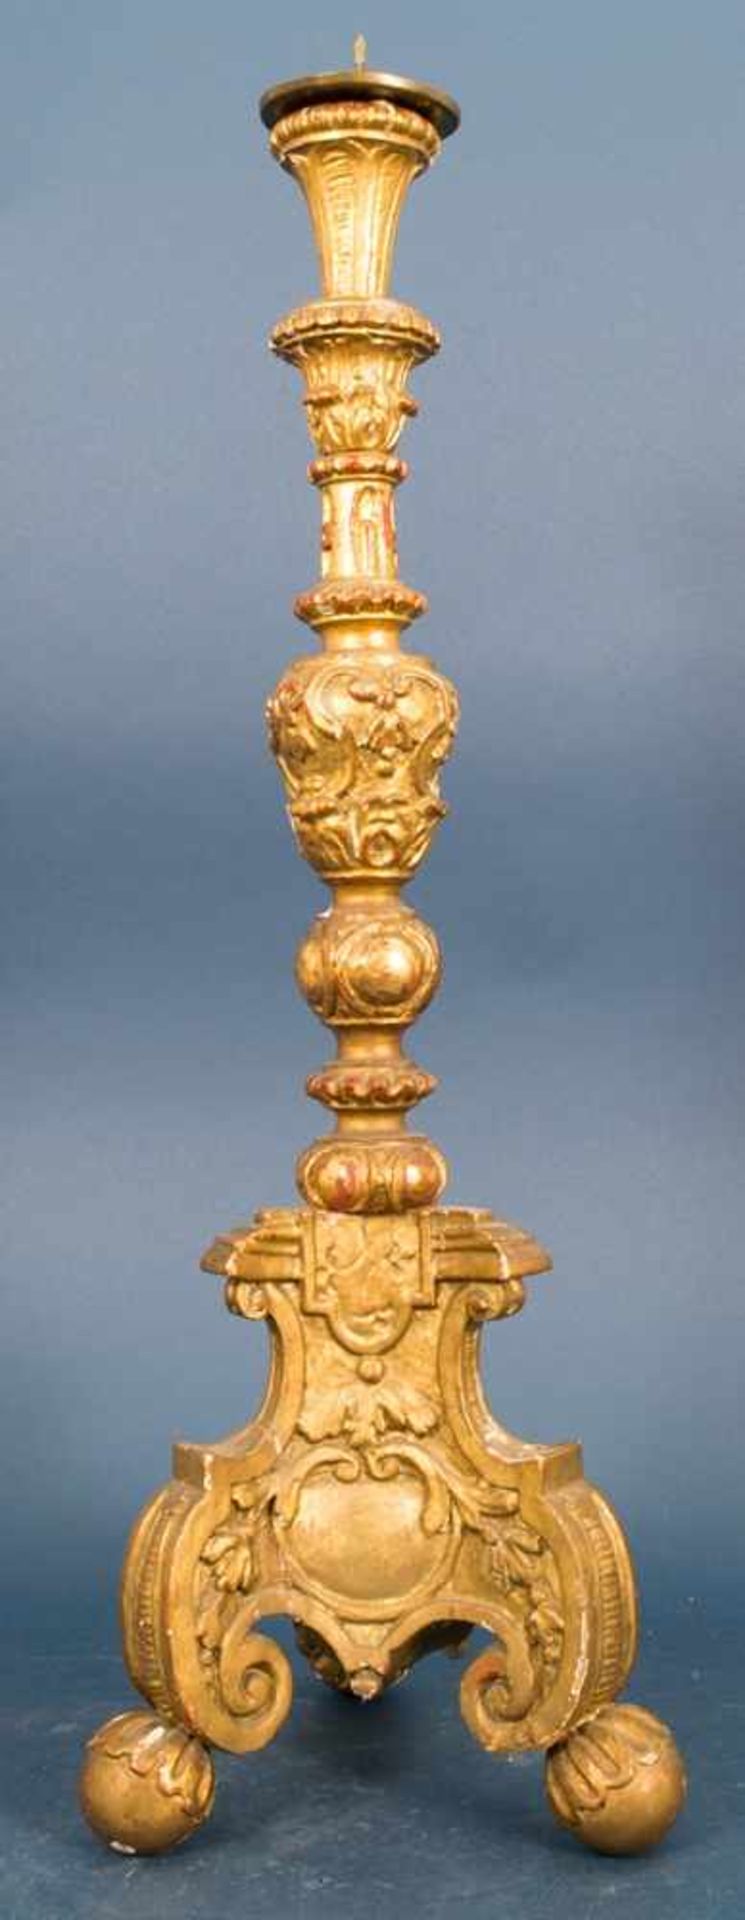 Einflammiger Kerzenleuchter, Barock, 18. Jhd., Holz geschnitzt & vergoldet, Höhe inkl. Tropfteller